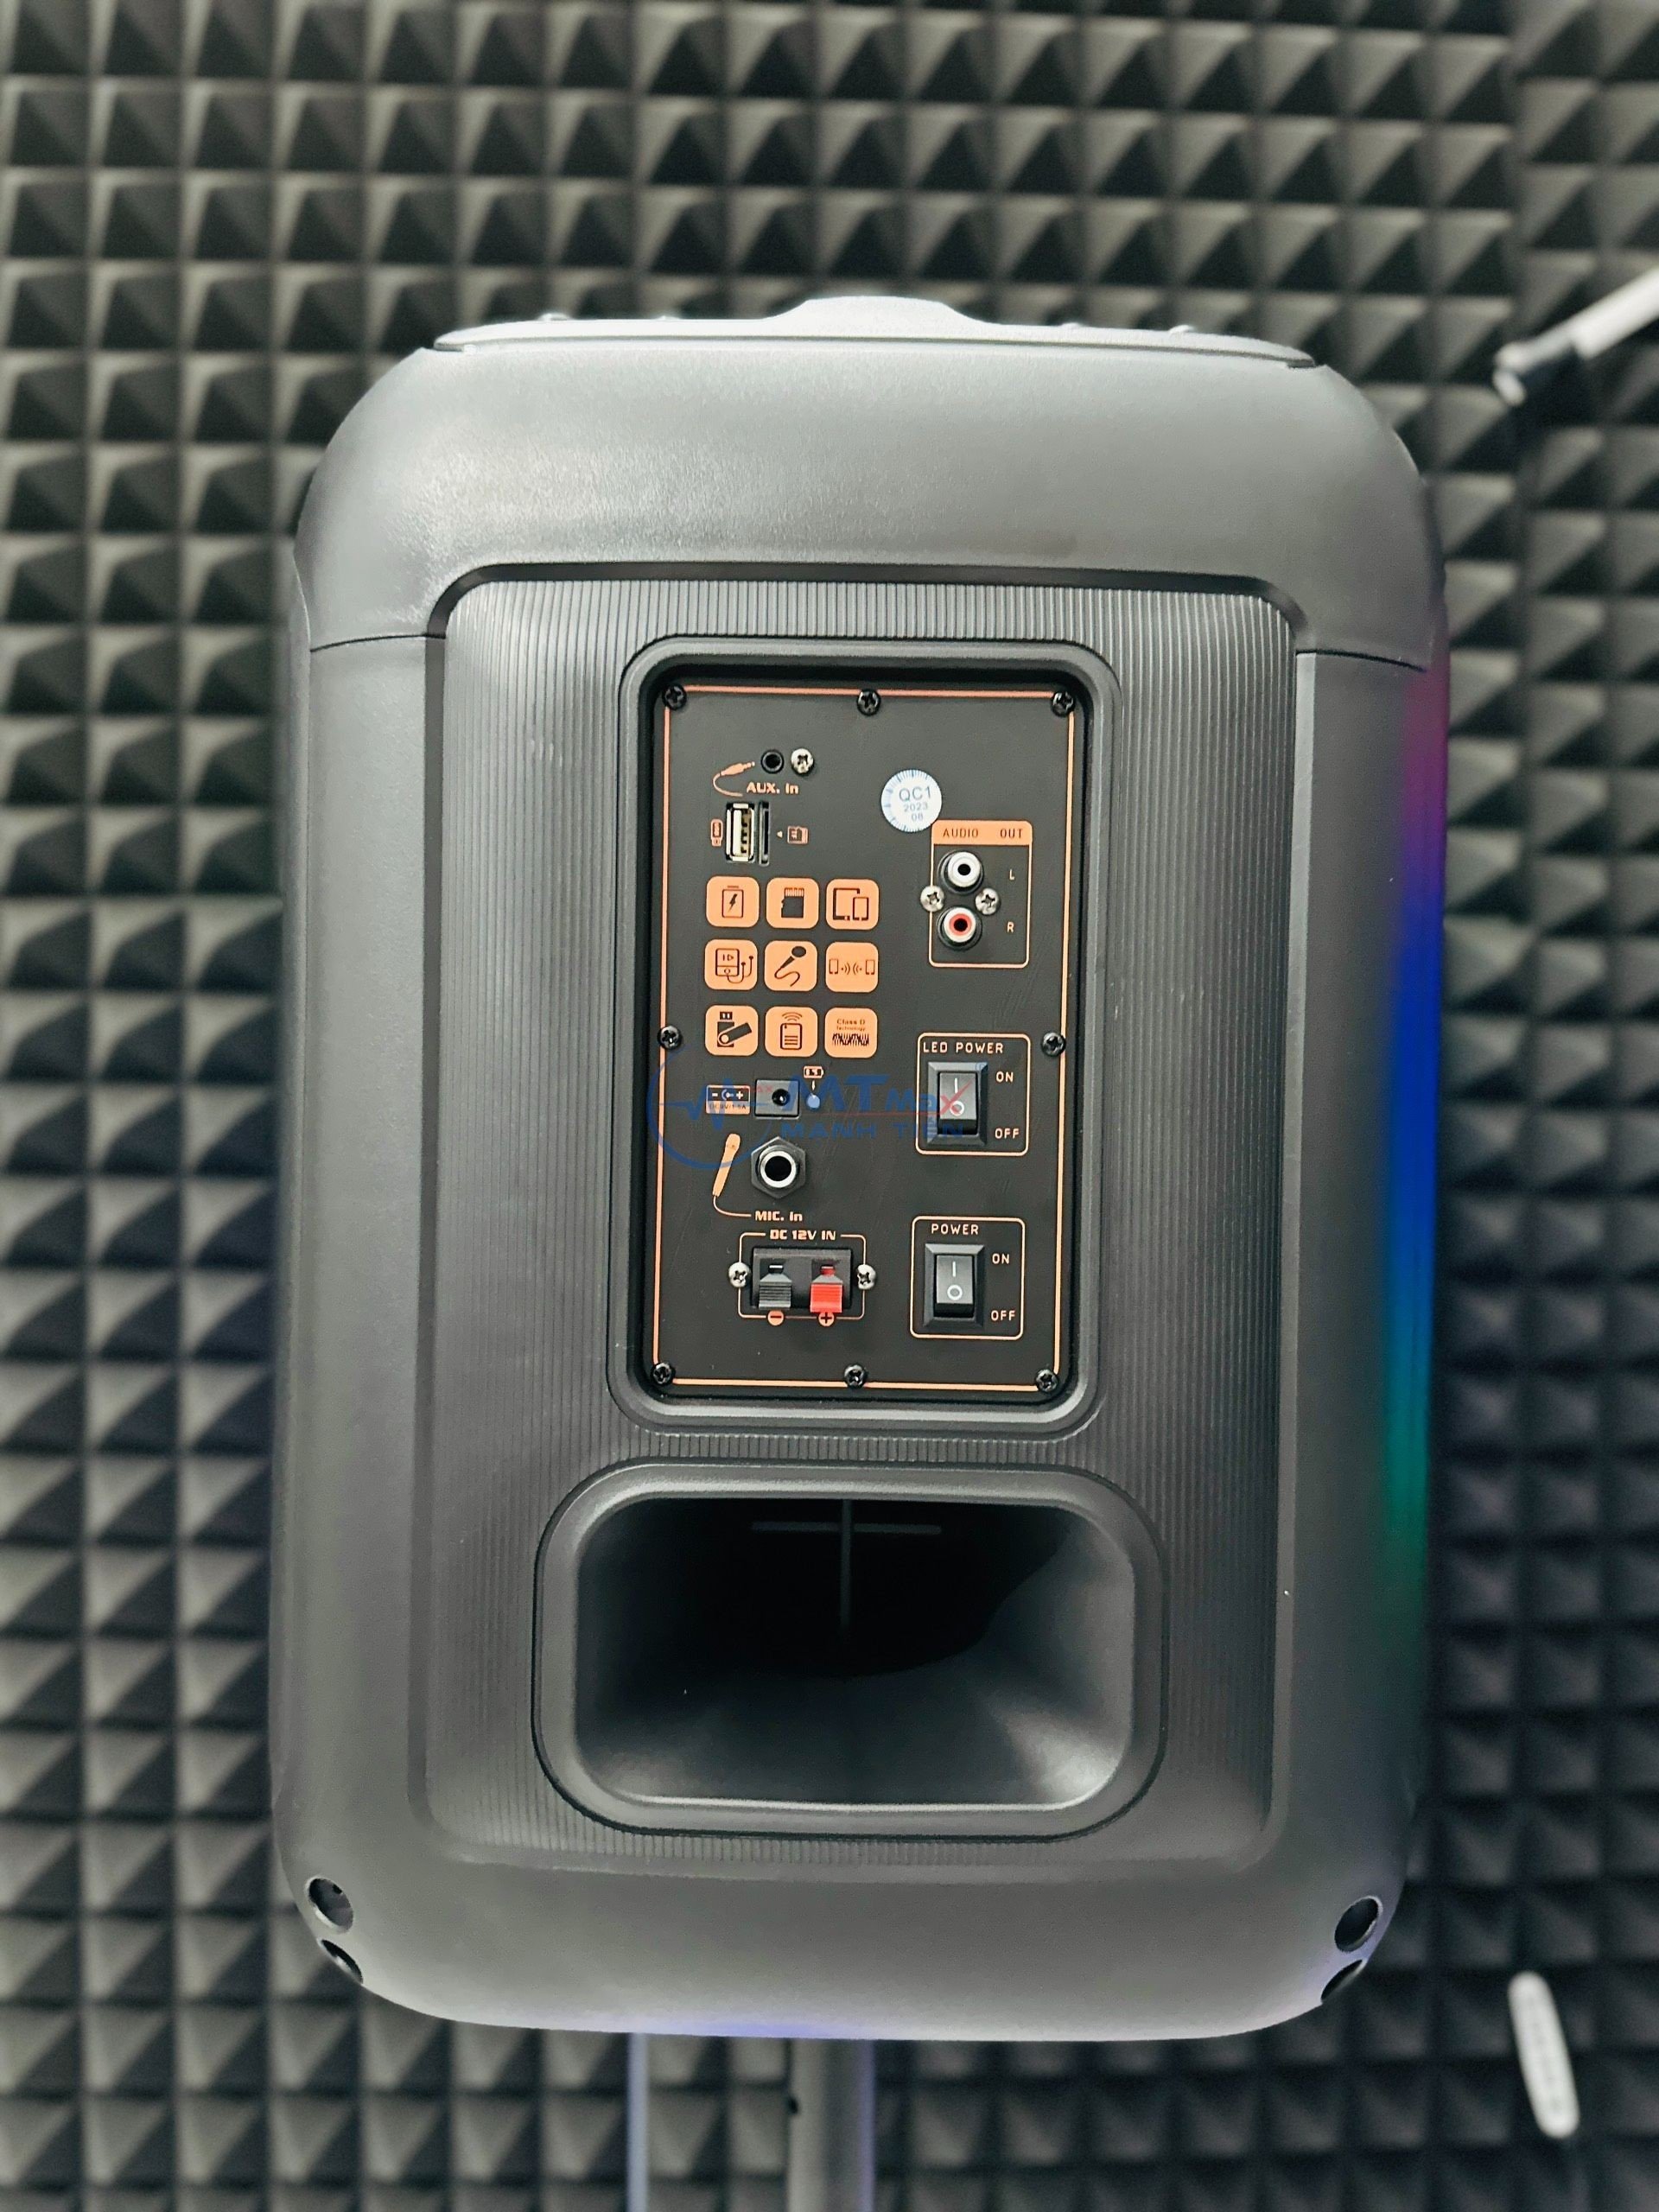 Loa Bluetooh Karaoke NDR 102B - Loa Đèn Led Cực Đẹp 7 Chế Độ, Âm Thanh Mạnh Mẽ, Trầm Ấm, Kết Nối Bluetooth, USB, TF, AUX, TWS, Đi Kèm Chân Loa Có Led RGB Và Micro Không Dây Đa Năng hàng chính hãng